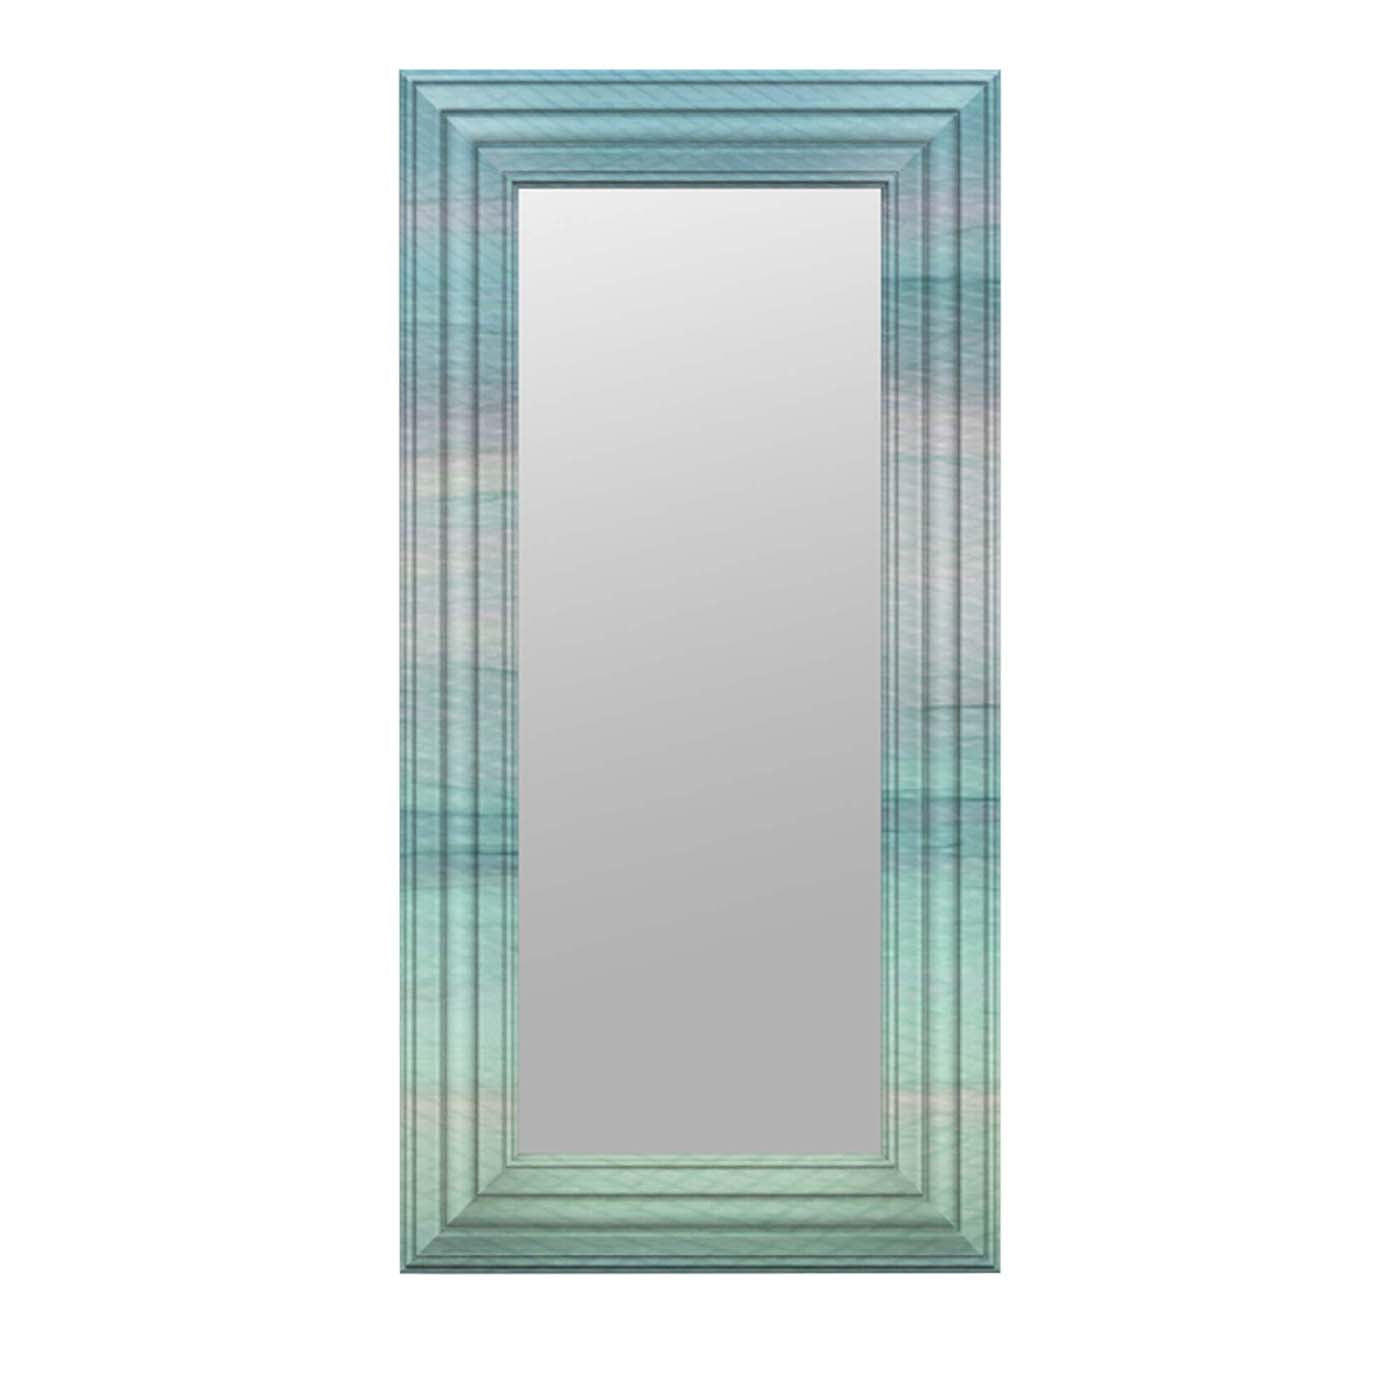 Grauer länglicher rechteckiger Multicolor-Spiegel - Hauptansicht